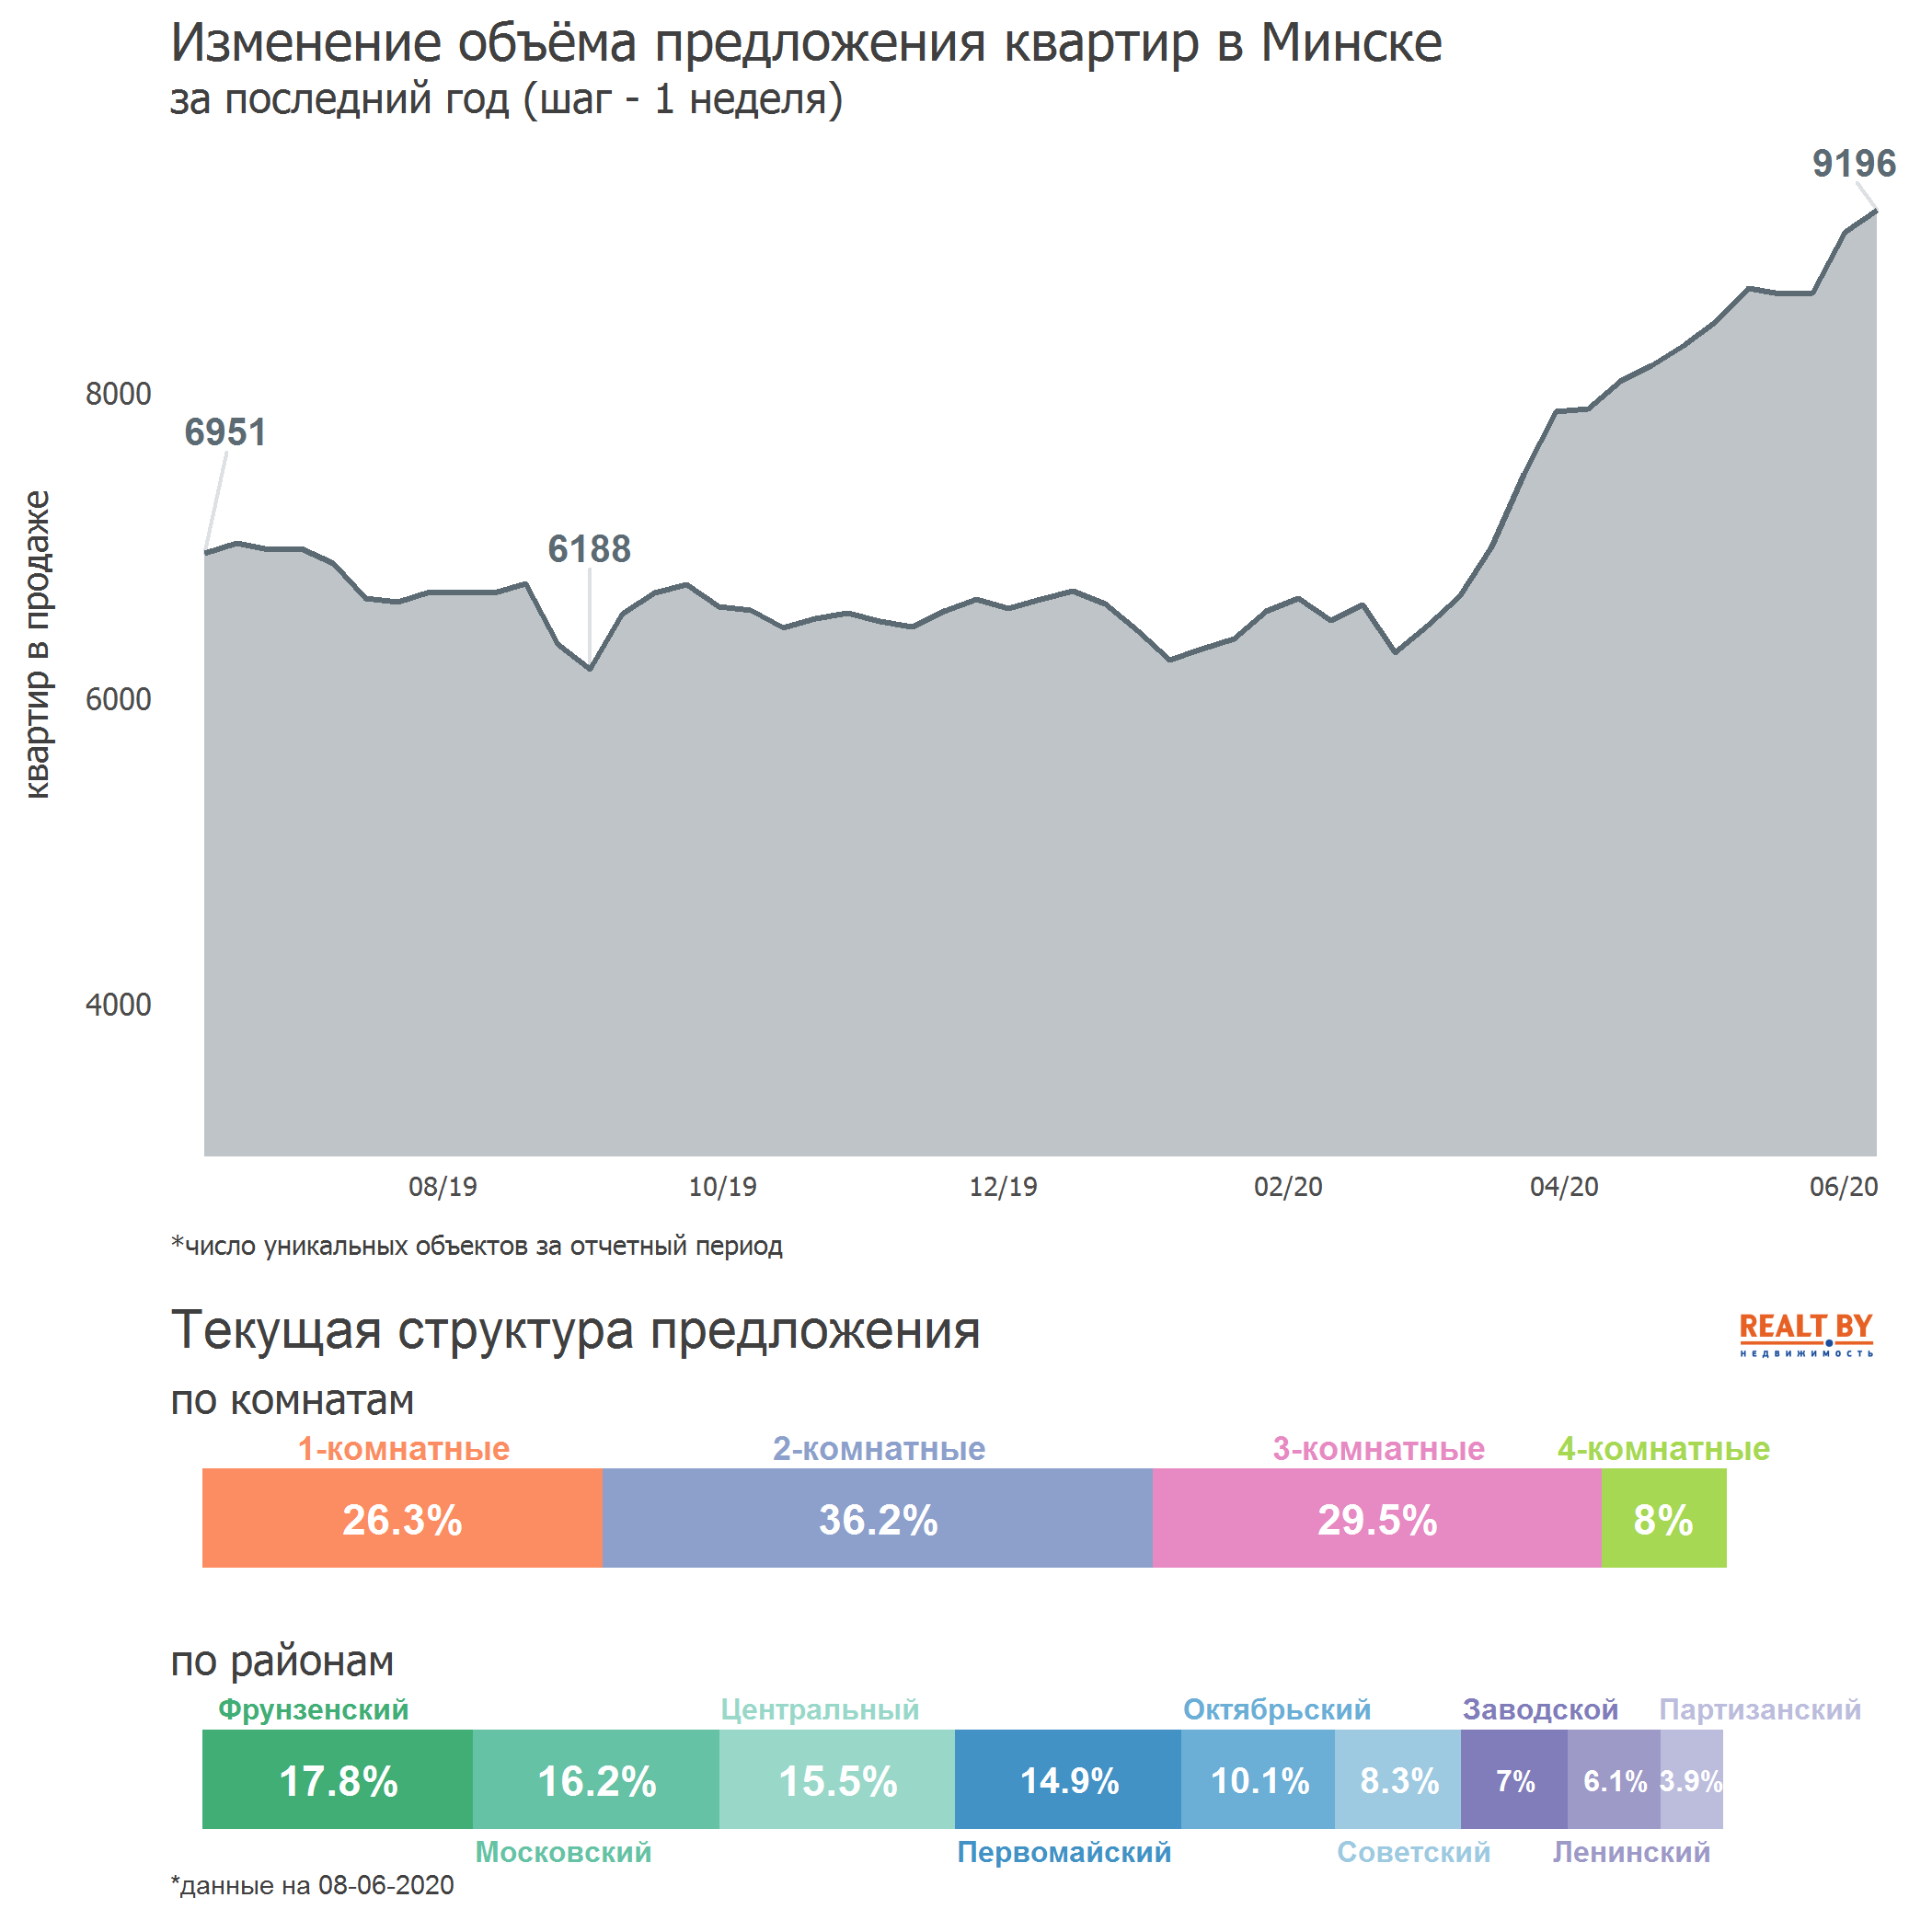 Мониторинг цен предложения квартир в Минске за 1-8 июня 2020 года